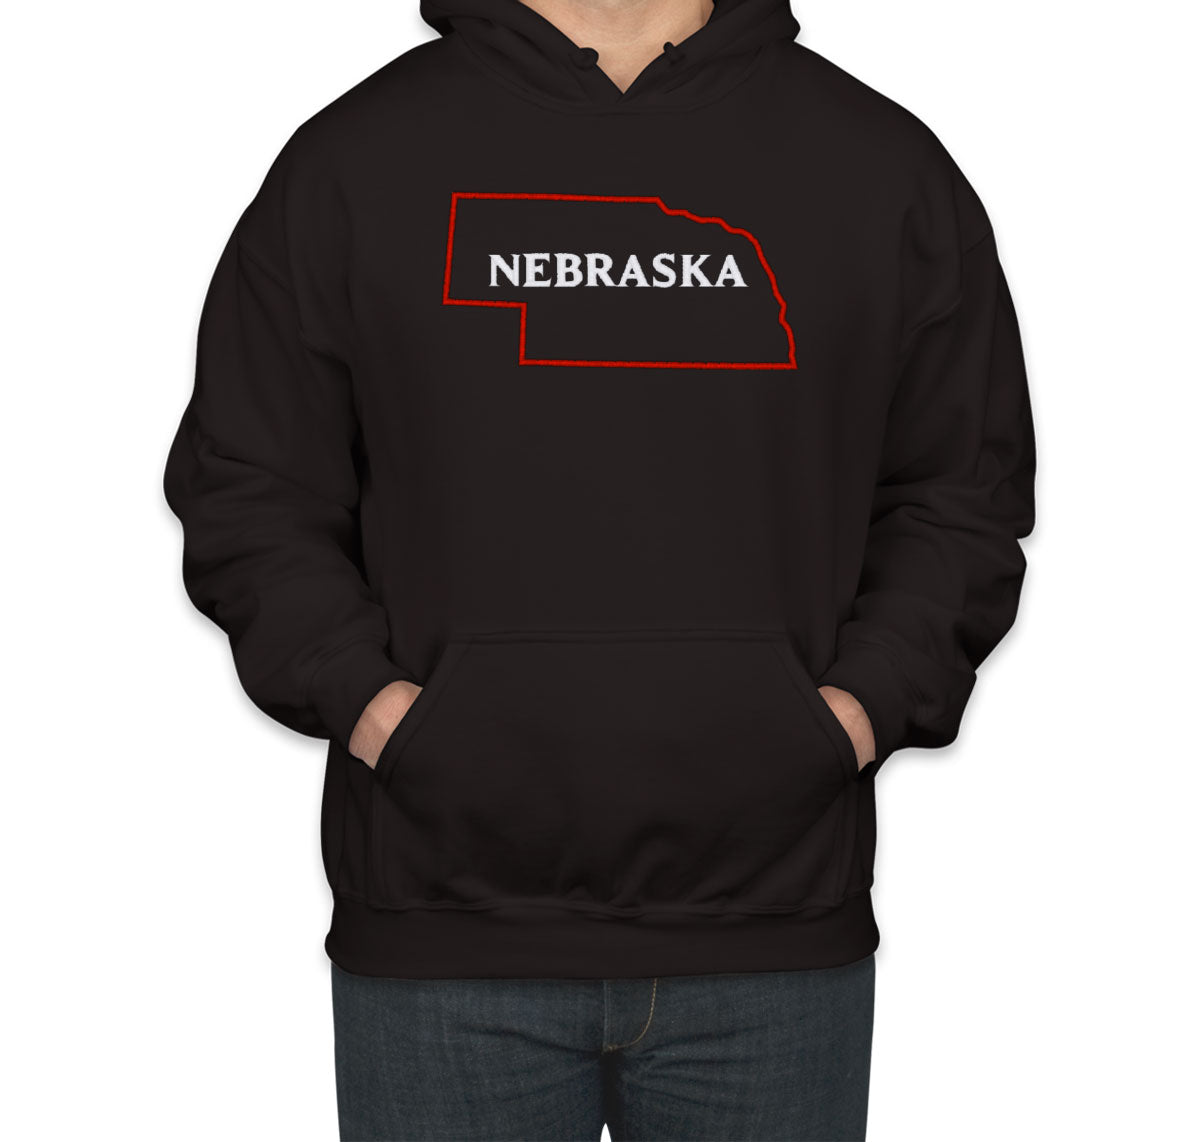 Nebraska Embroidered Unisex Hoodie